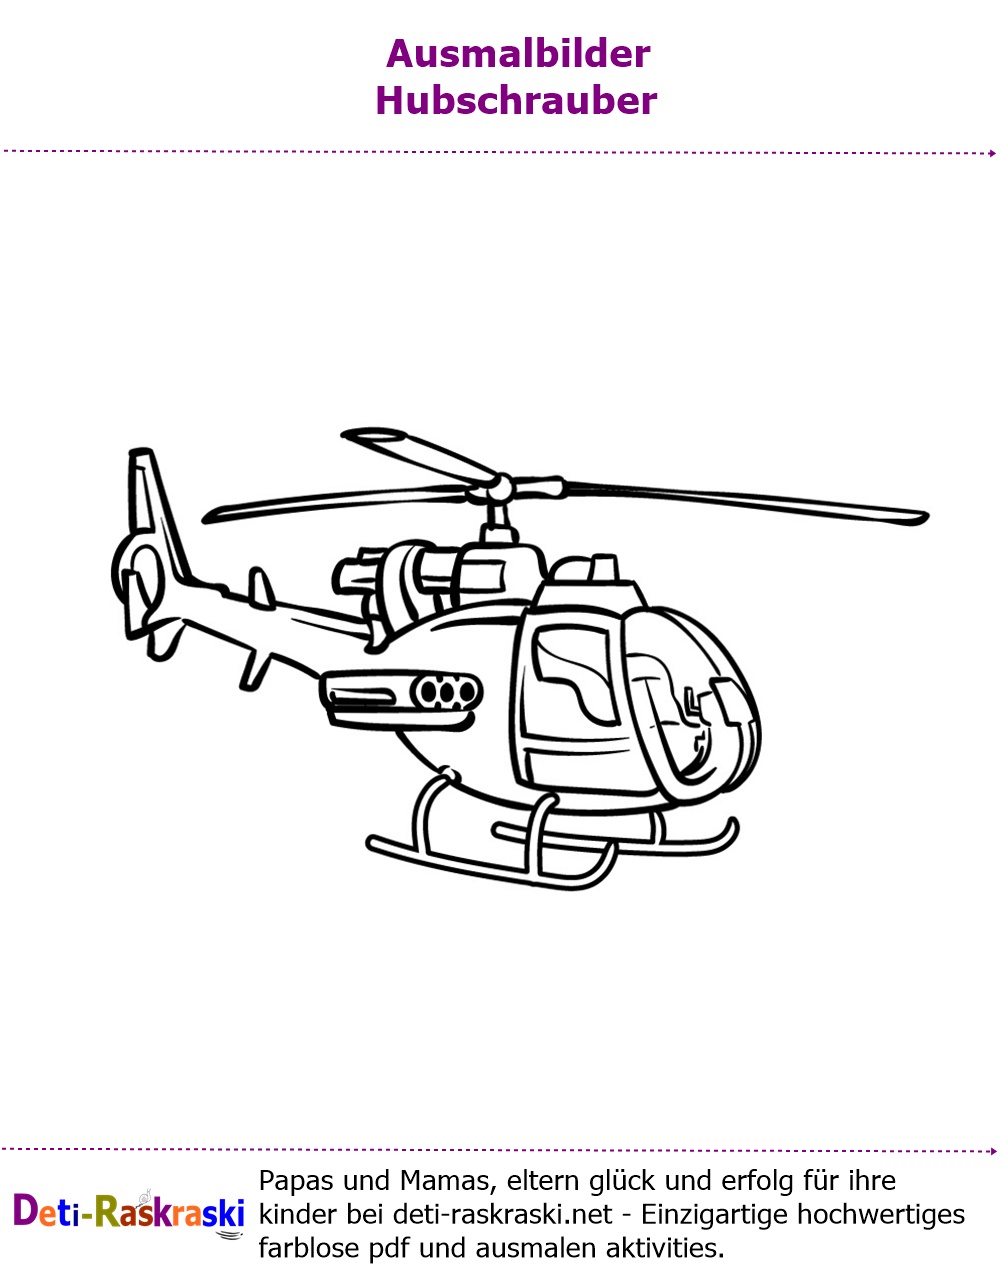 Ausmalbild Hubschrauber PDF